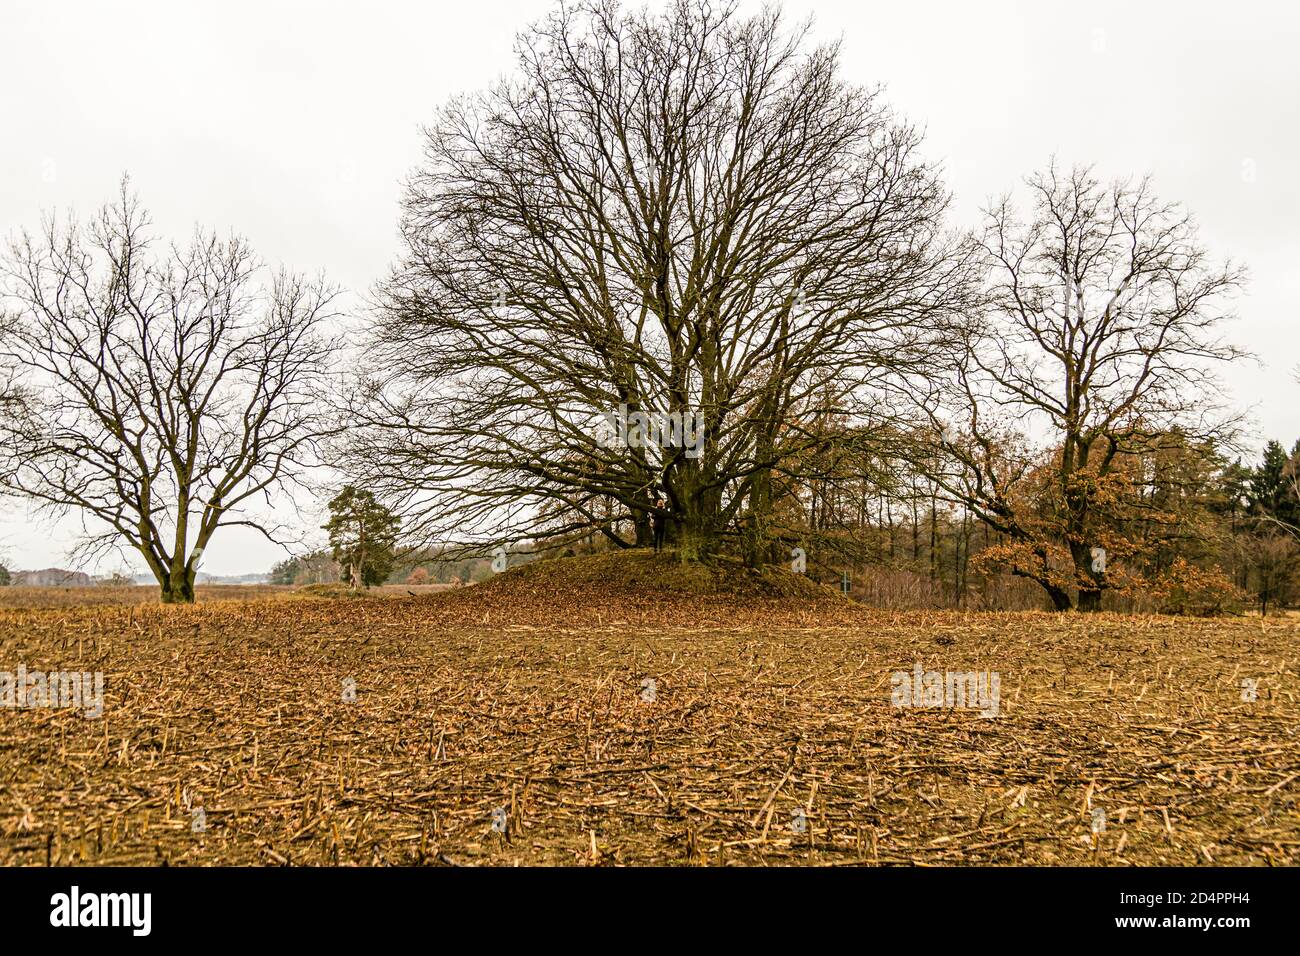 Rural Landscape near Fincken, Germany Stock Photo